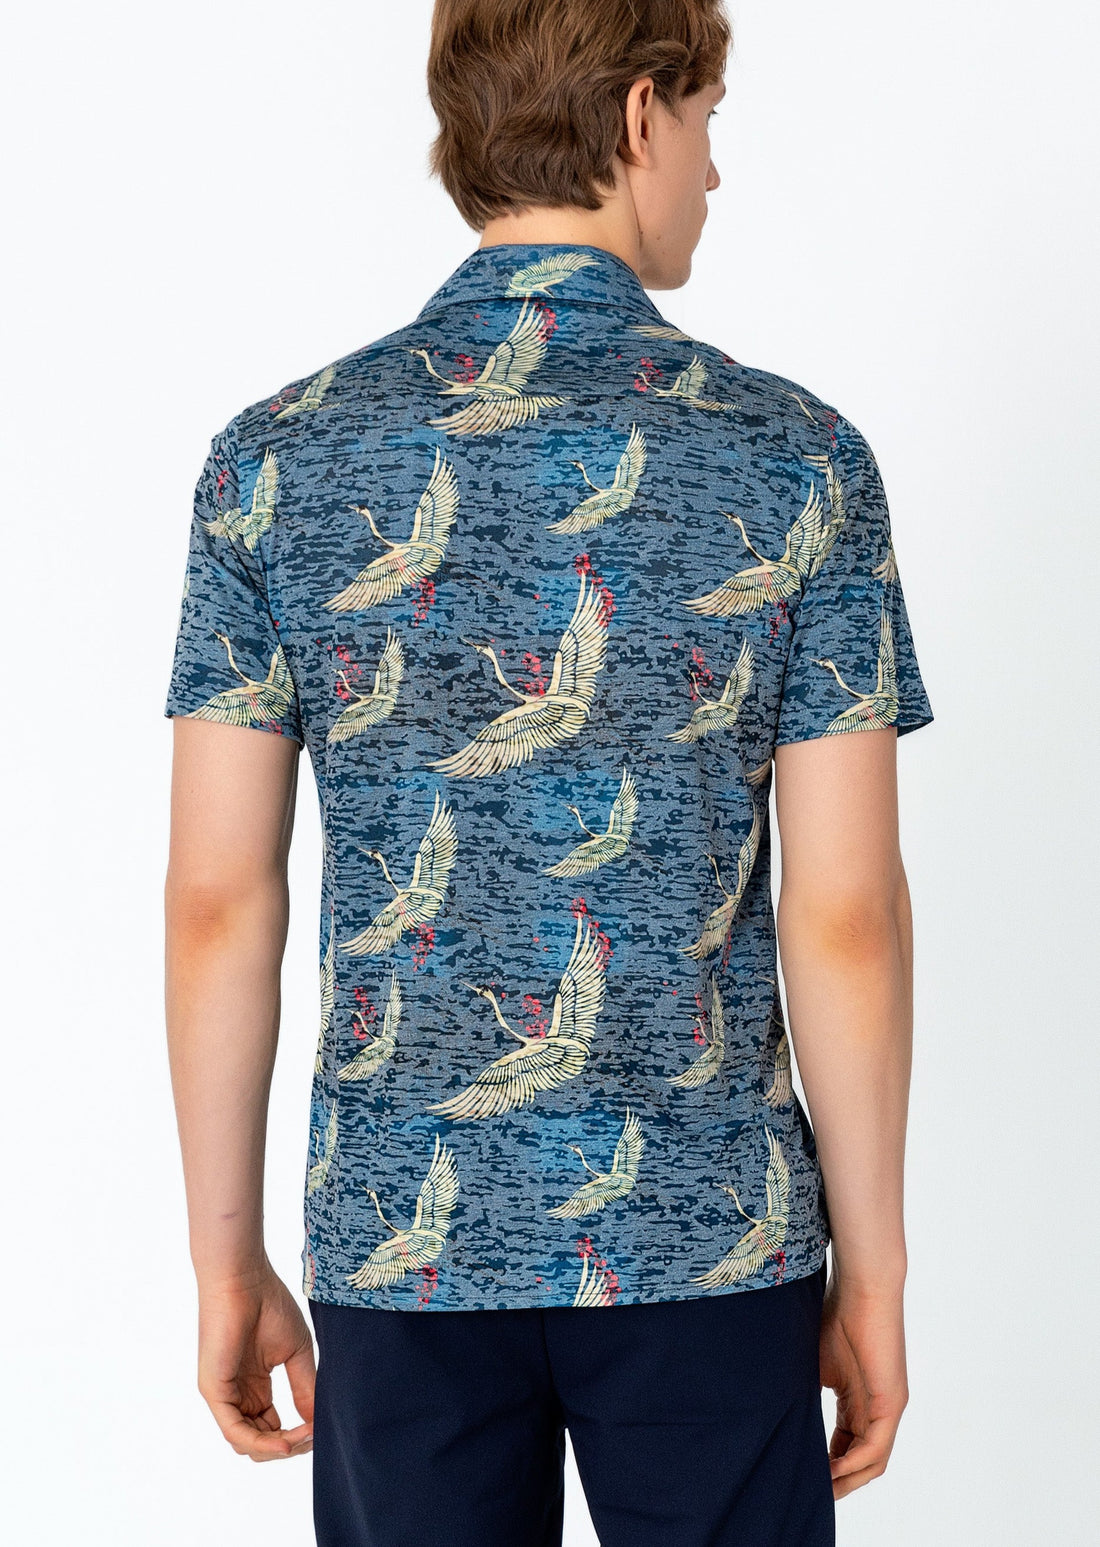 Collared Lightweight Shirt - Stork Navy